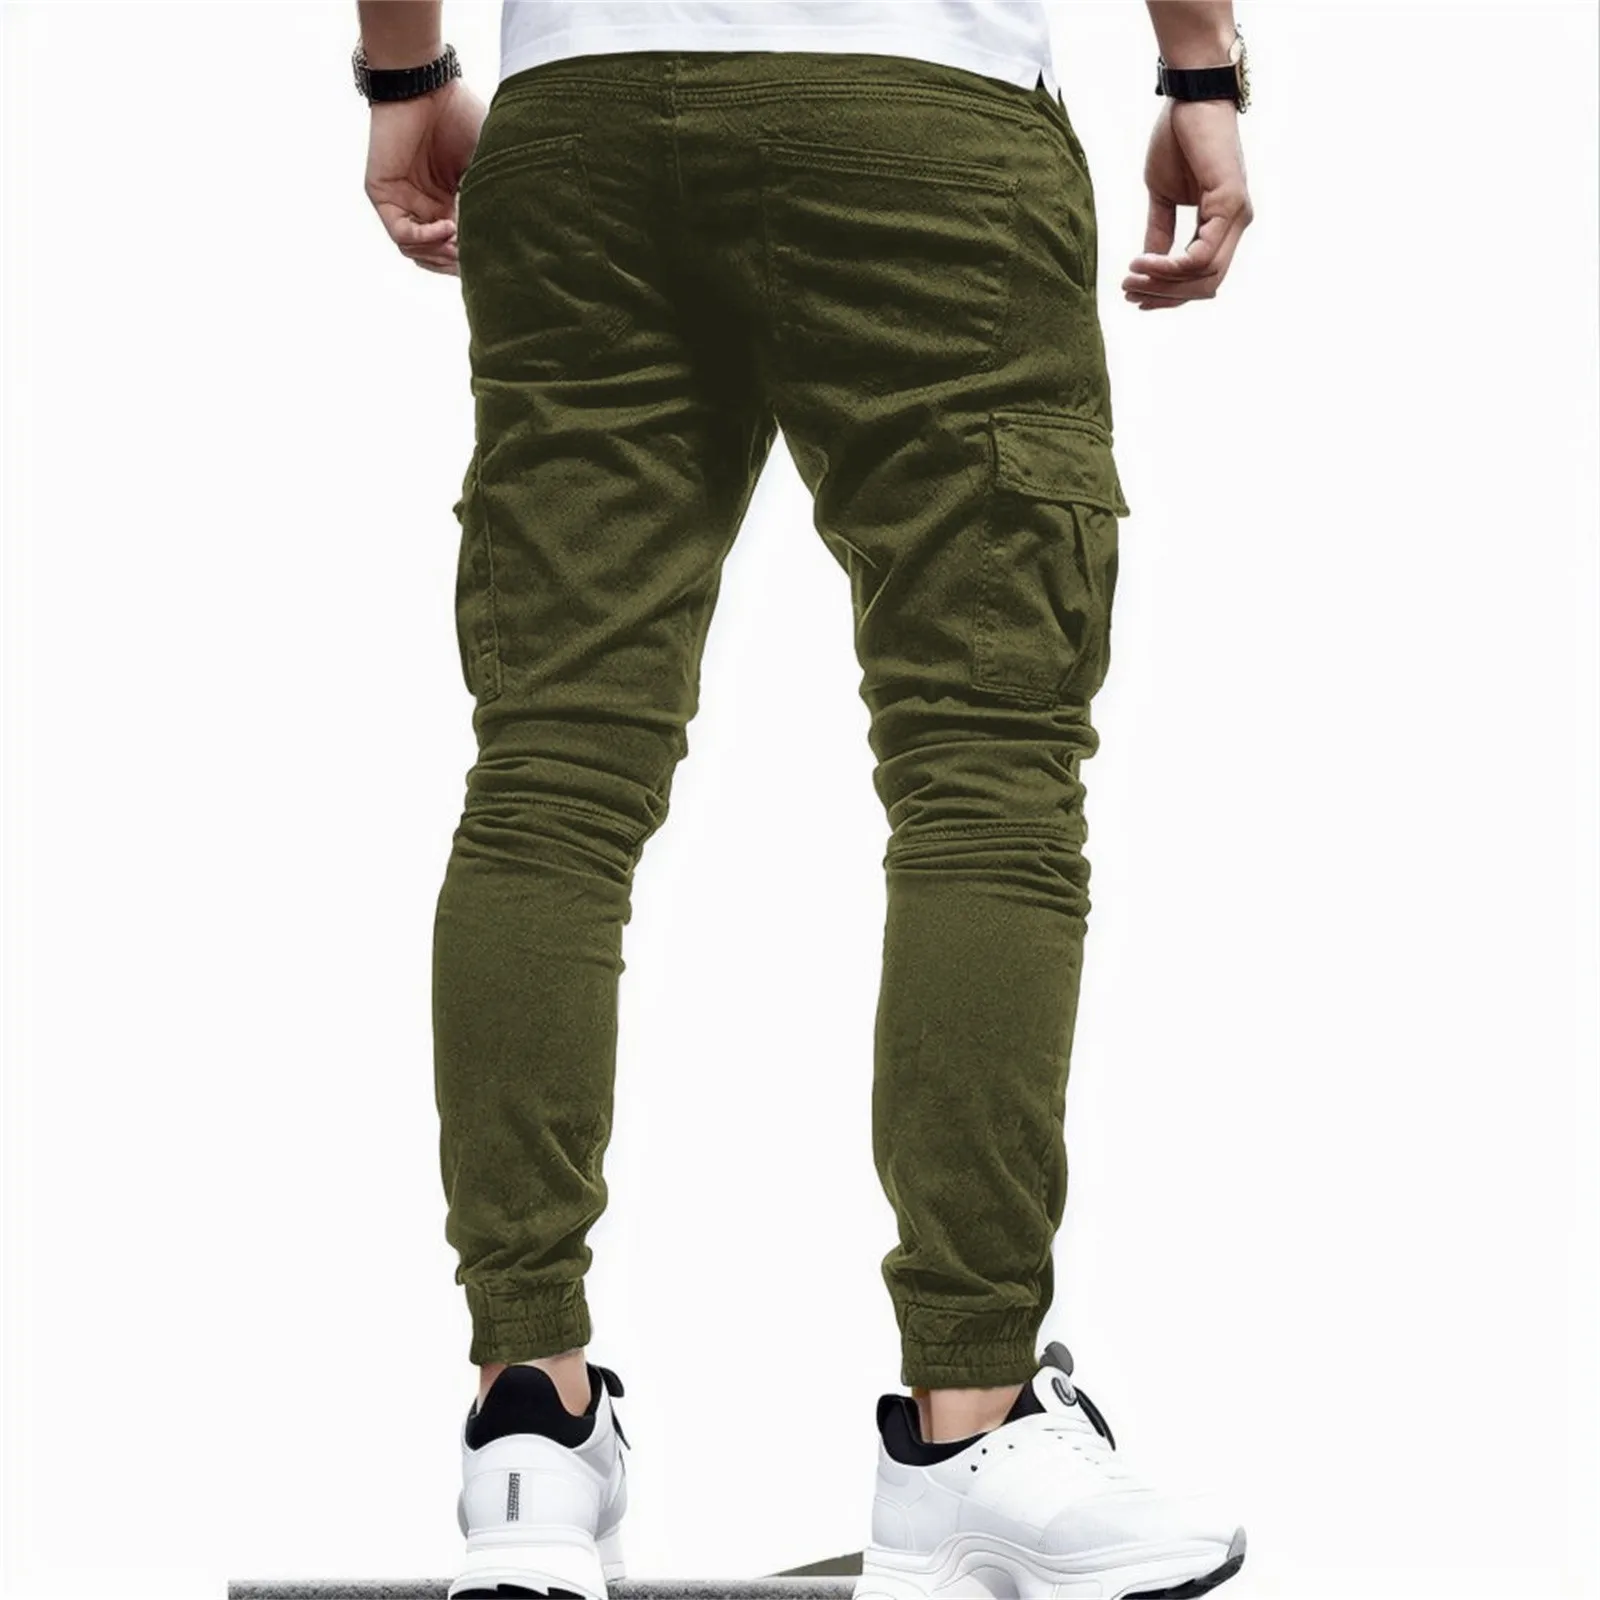 กางเกงลำลองผู้ชายแฟชั่นมีกระเป๋าขนาดใหญ่กางเกงฮาเร็มฮิปฮอปกางเกงวอร์มคุณภาพสูงกางเกงขายาวผู้ชาย